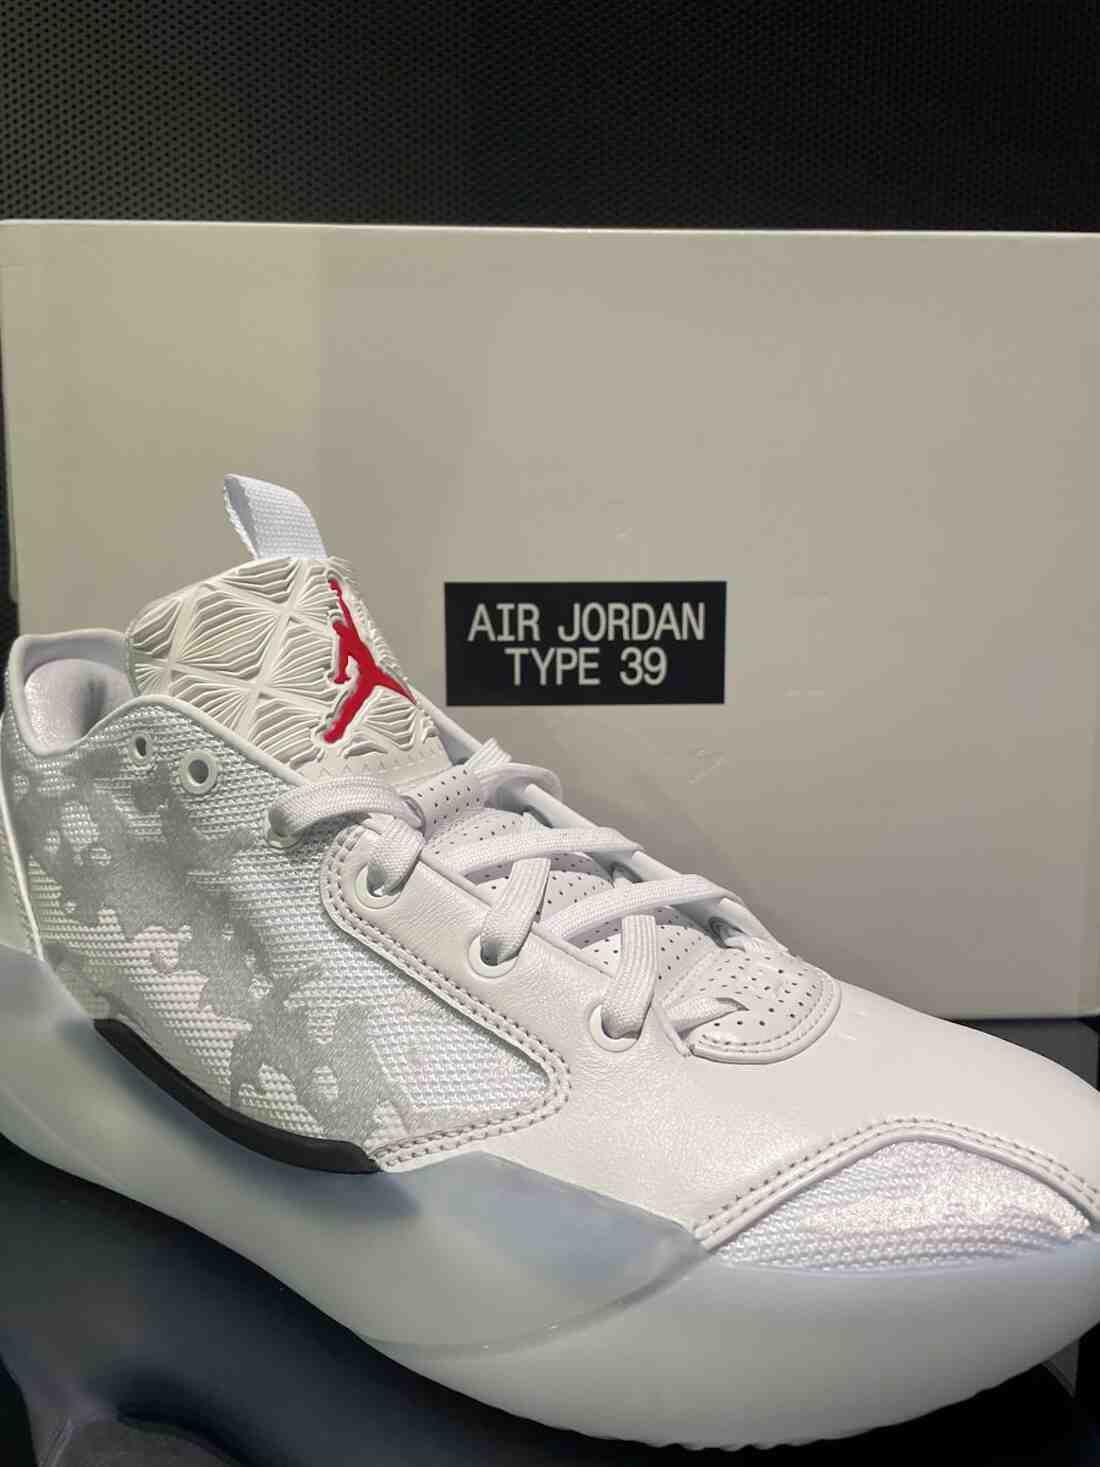 Jordan Brand, Air Jordan 39, Air Jordan 3, Air Jordan - 喬丹品牌正式發佈 Air Jordan 39